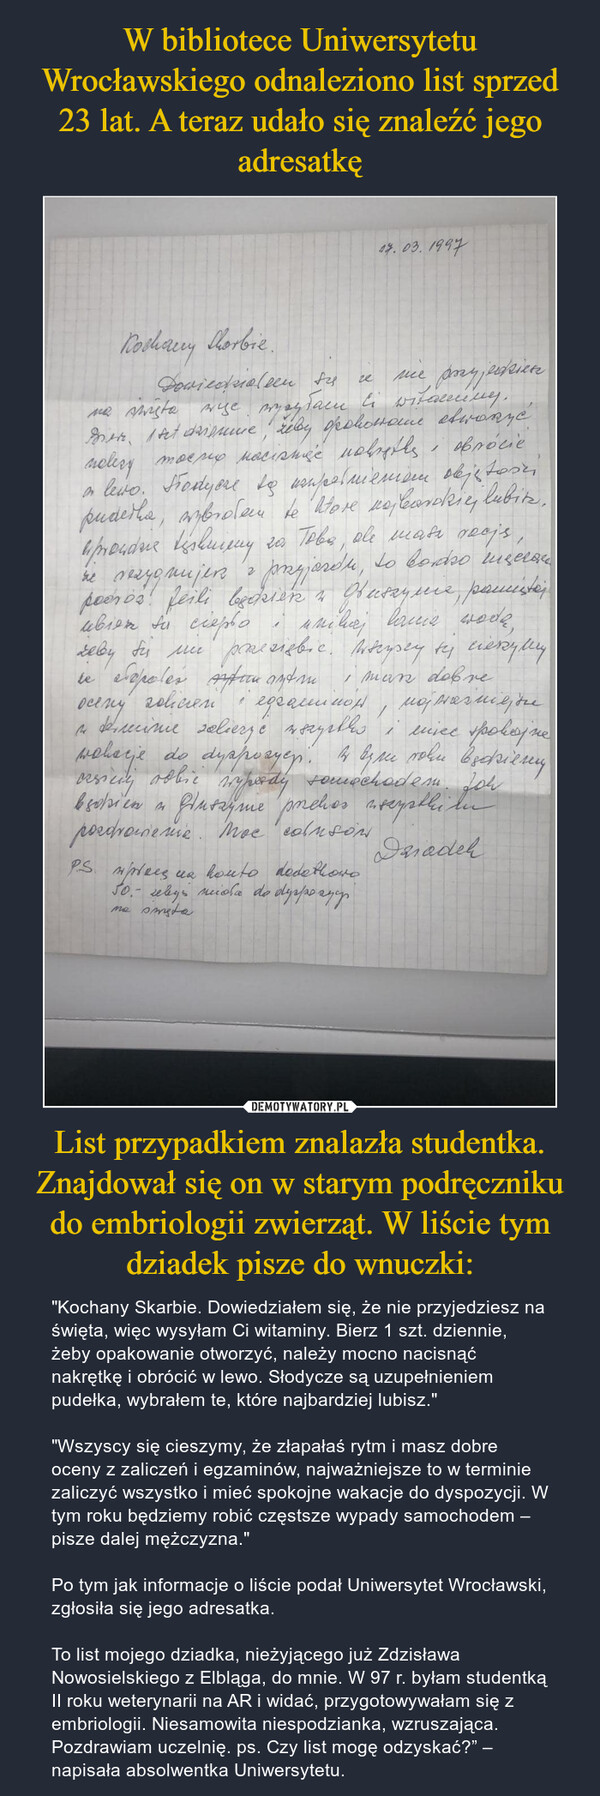 W bibliotece Uniwersytetu Wrocławskiego odnaleziono list sprzed 23 lat. A teraz udało się znaleźć jego adresatkę List przypadkiem znalazła studentka. Znajdował się on w starym podręczniku do embriologii zwierząt. W liście tym dziadek pisze do wnuczki: